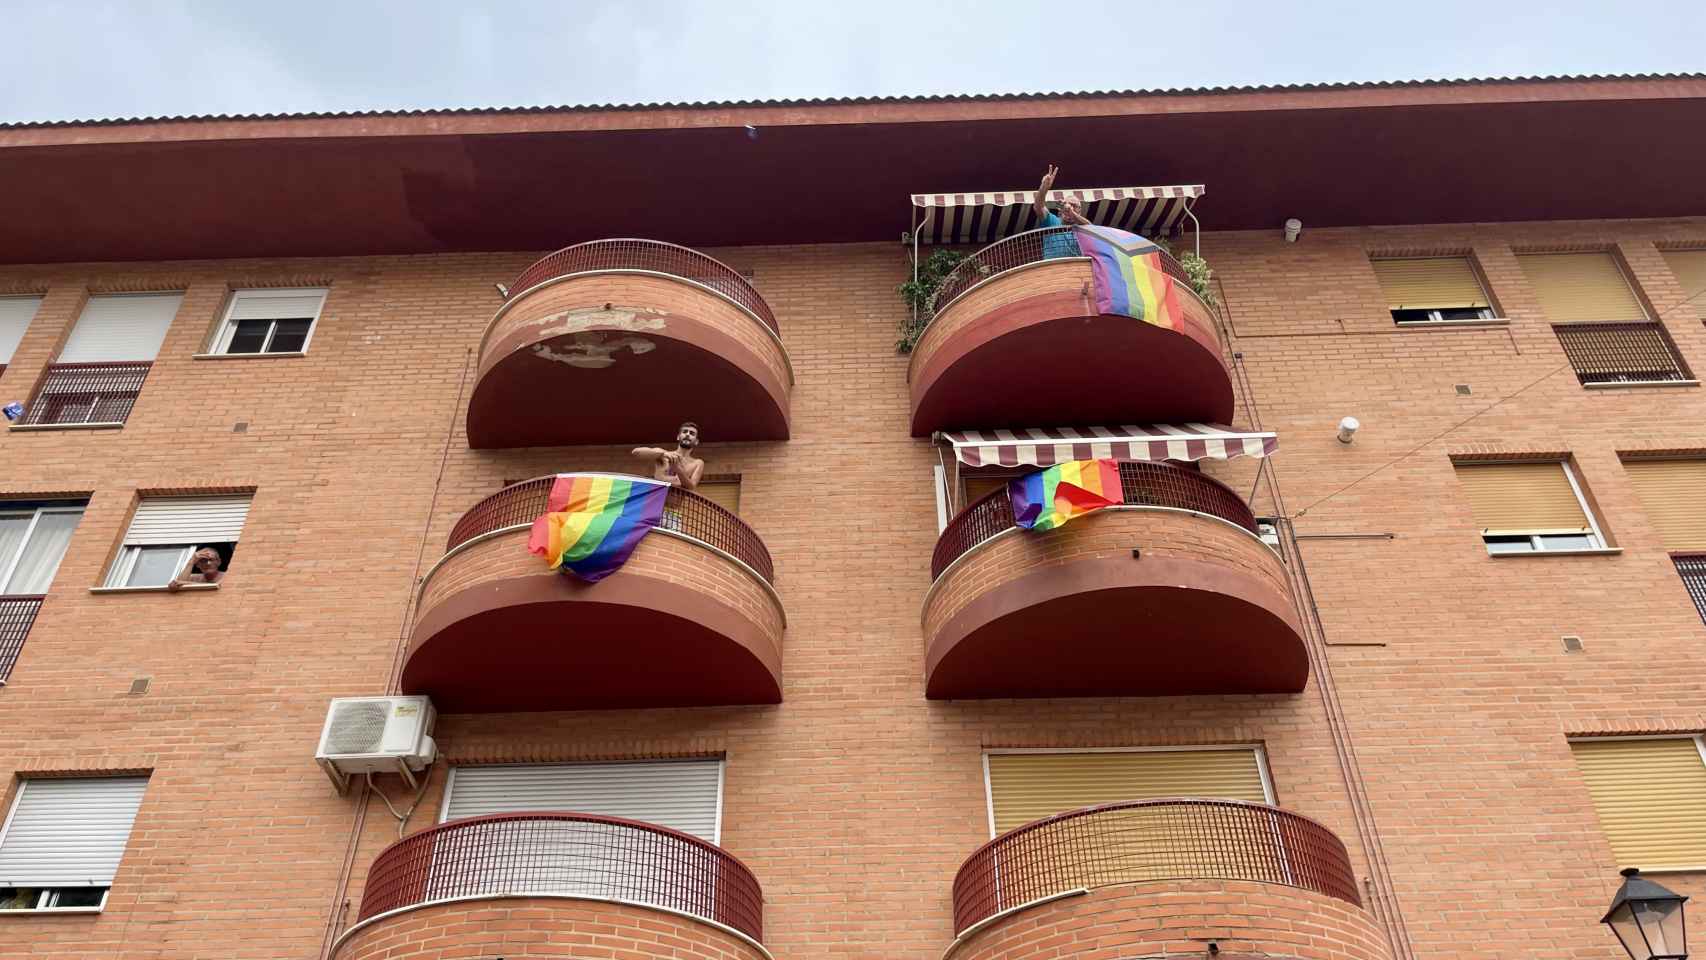 Los vecinos colgaron la bandera del Orgullo en sus balcones.